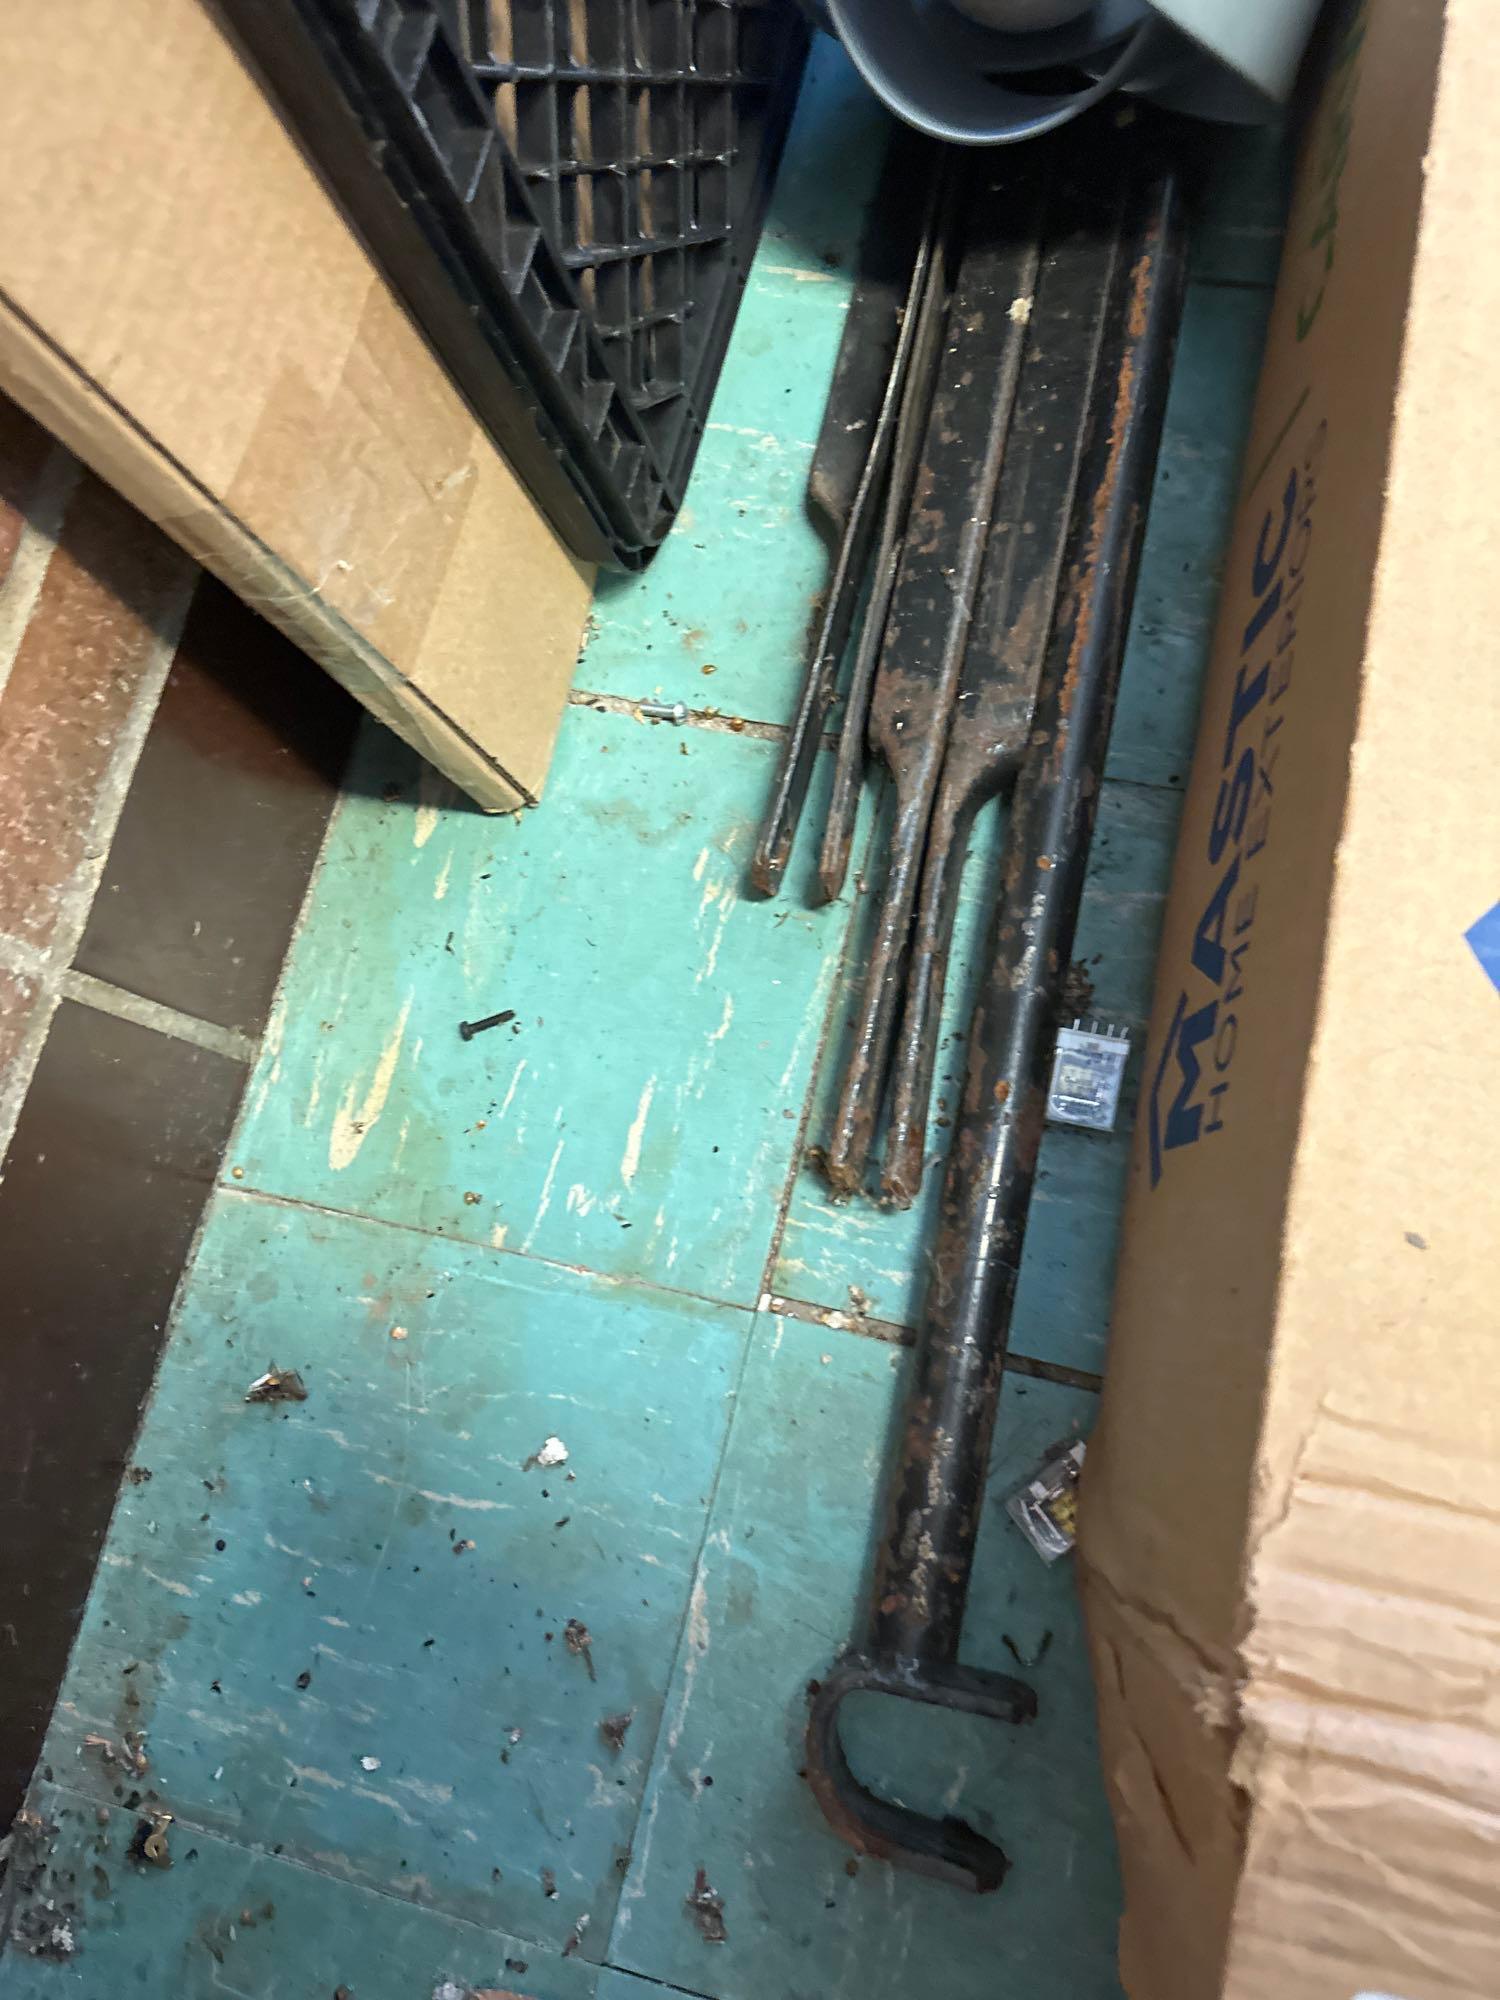 rolls of insulation - BiFold doors - Vinyl siding - peg board - scaffolding cross members